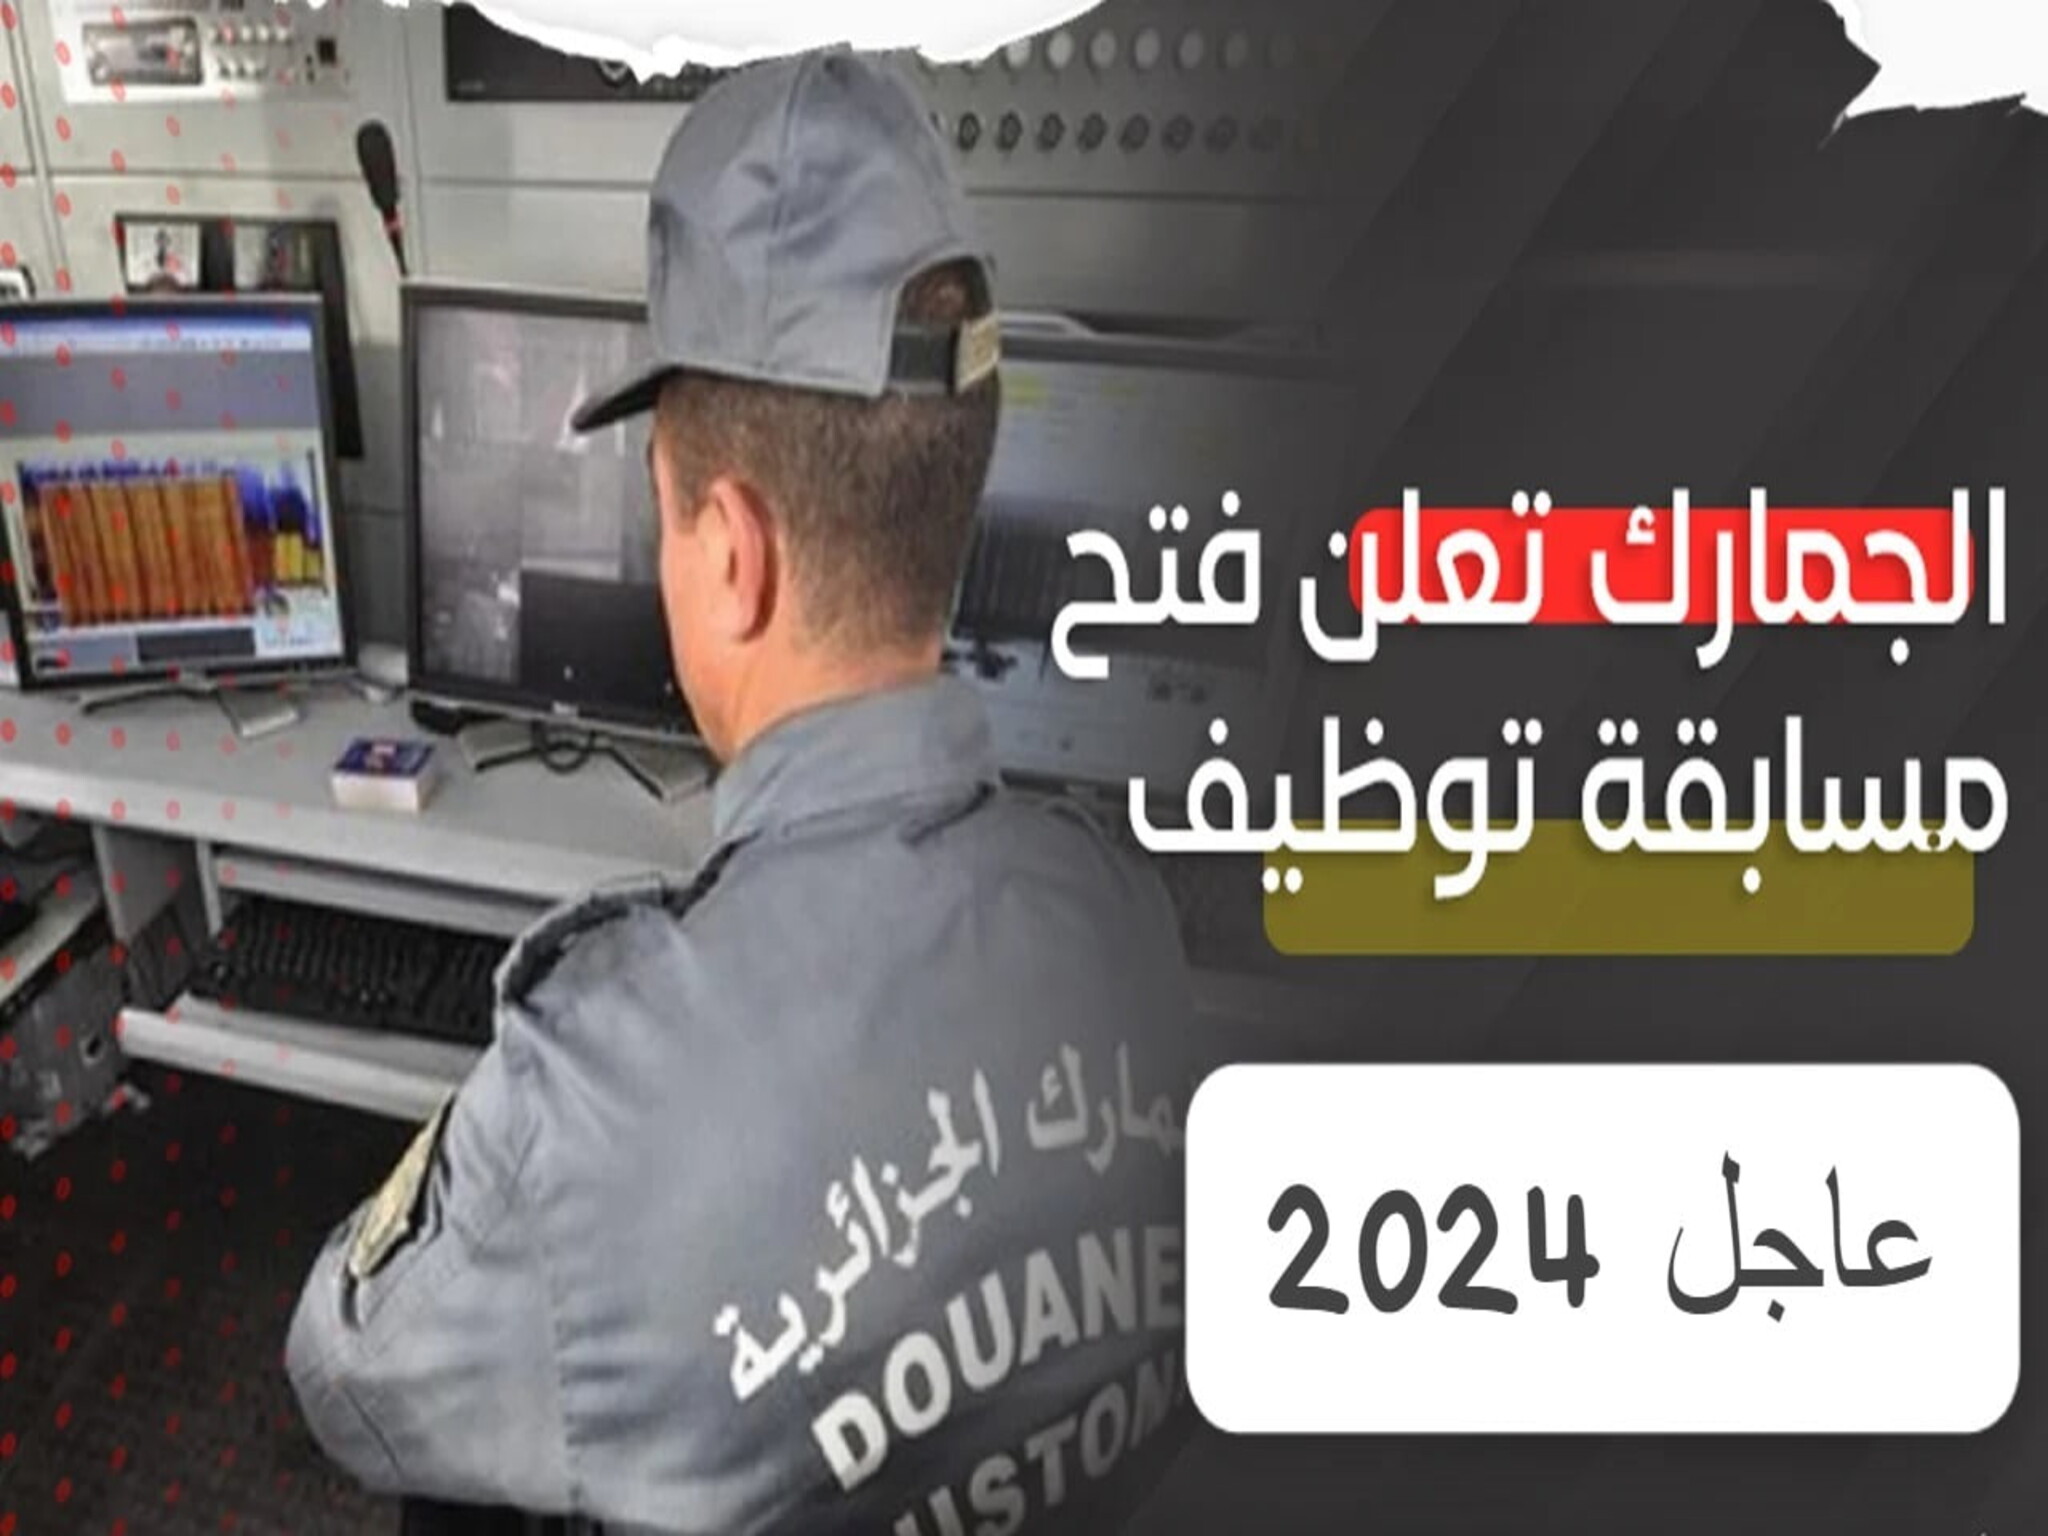 خطوات التسجيل في مسابقة الجمارك بالجزائر 2024 .. وأهم الشروط المطلوبة